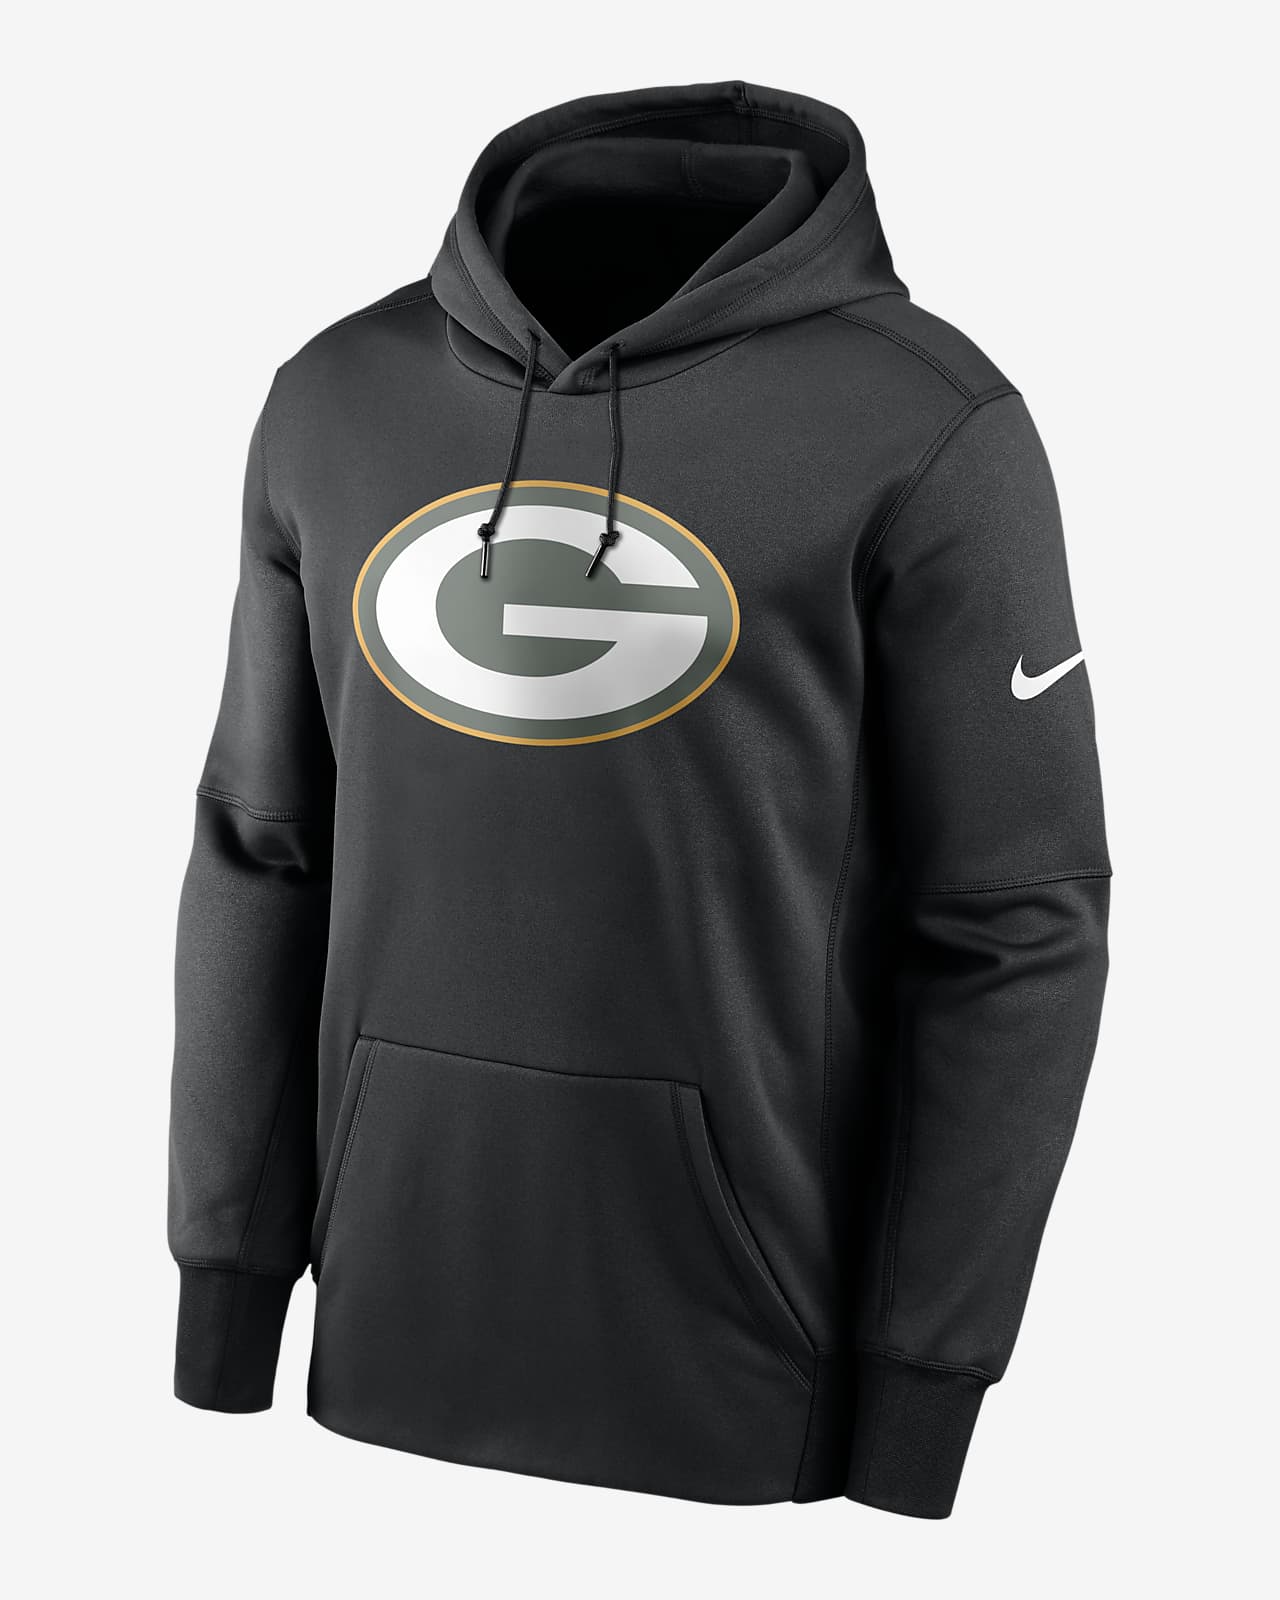 Felpa pullover con cappuccio Nike Therma Prime Logo (NFL Green Bay Packers) - Uomo